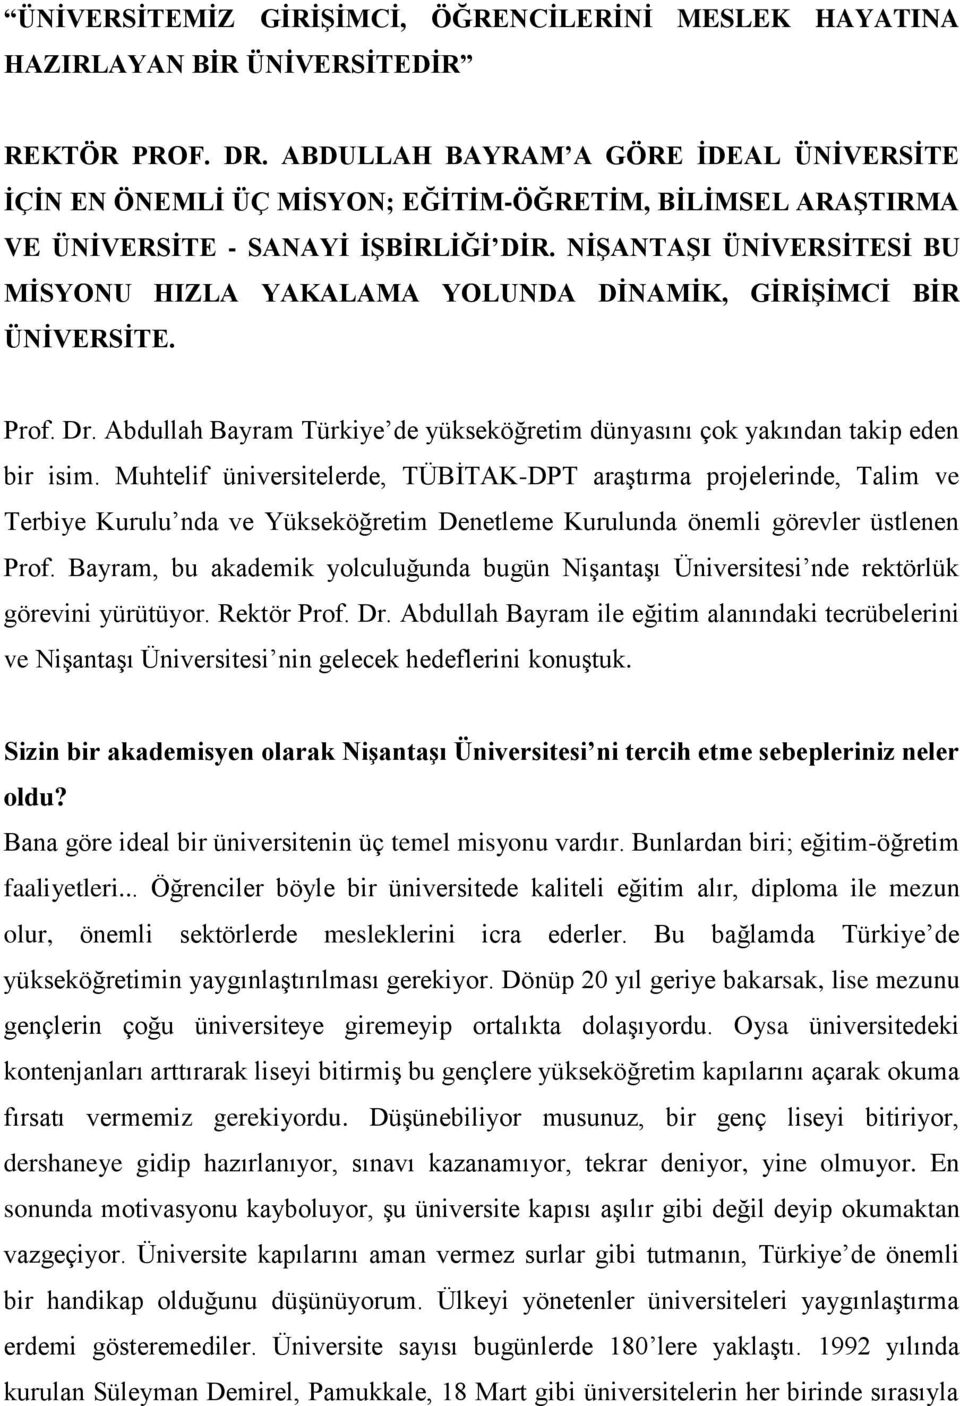 NİŞANTAŞI ÜNİVERSİTESİ BU MİSYONU HIZLA YAKALAMA YOLUNDA DİNAMİK, GİRİŞİMCİ BİR ÜNİVERSİTE. Prof. Dr. Abdullah Bayram Türkiye de yükseköğretim dünyasını çok yakından takip eden bir isim.